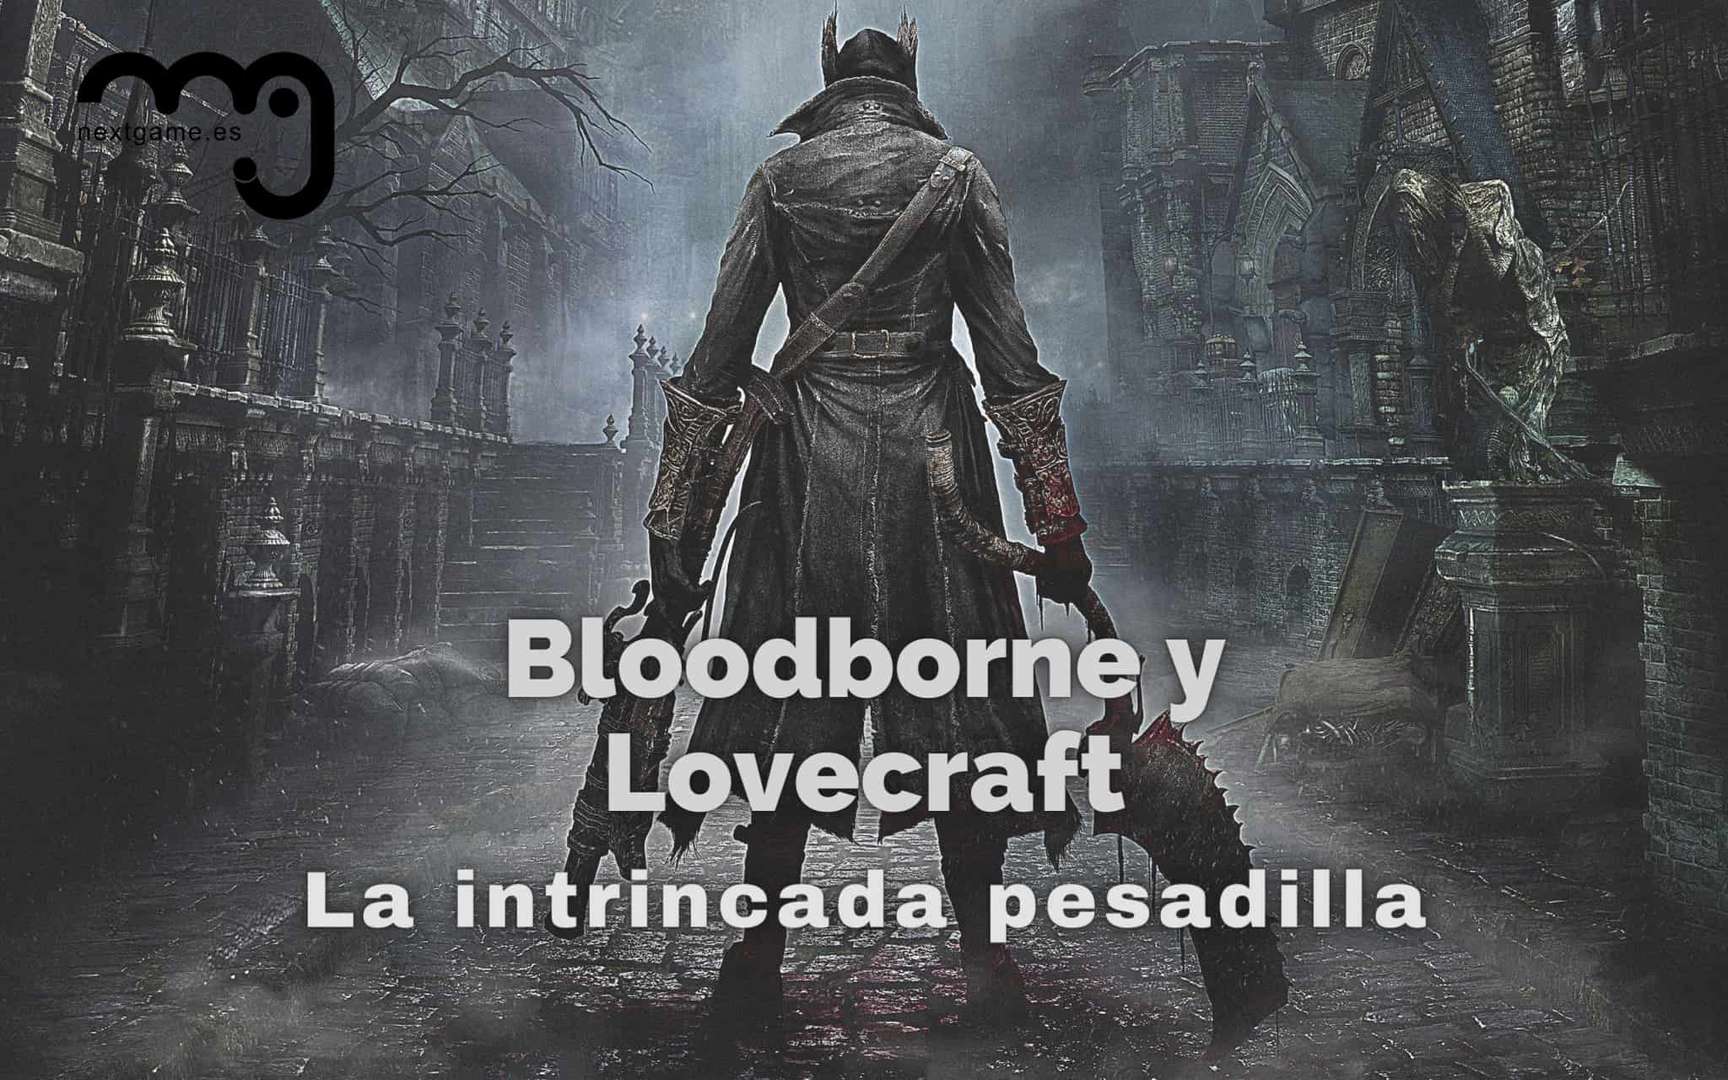 Bloodborne y Lovecraft: La intrincada pesadilla